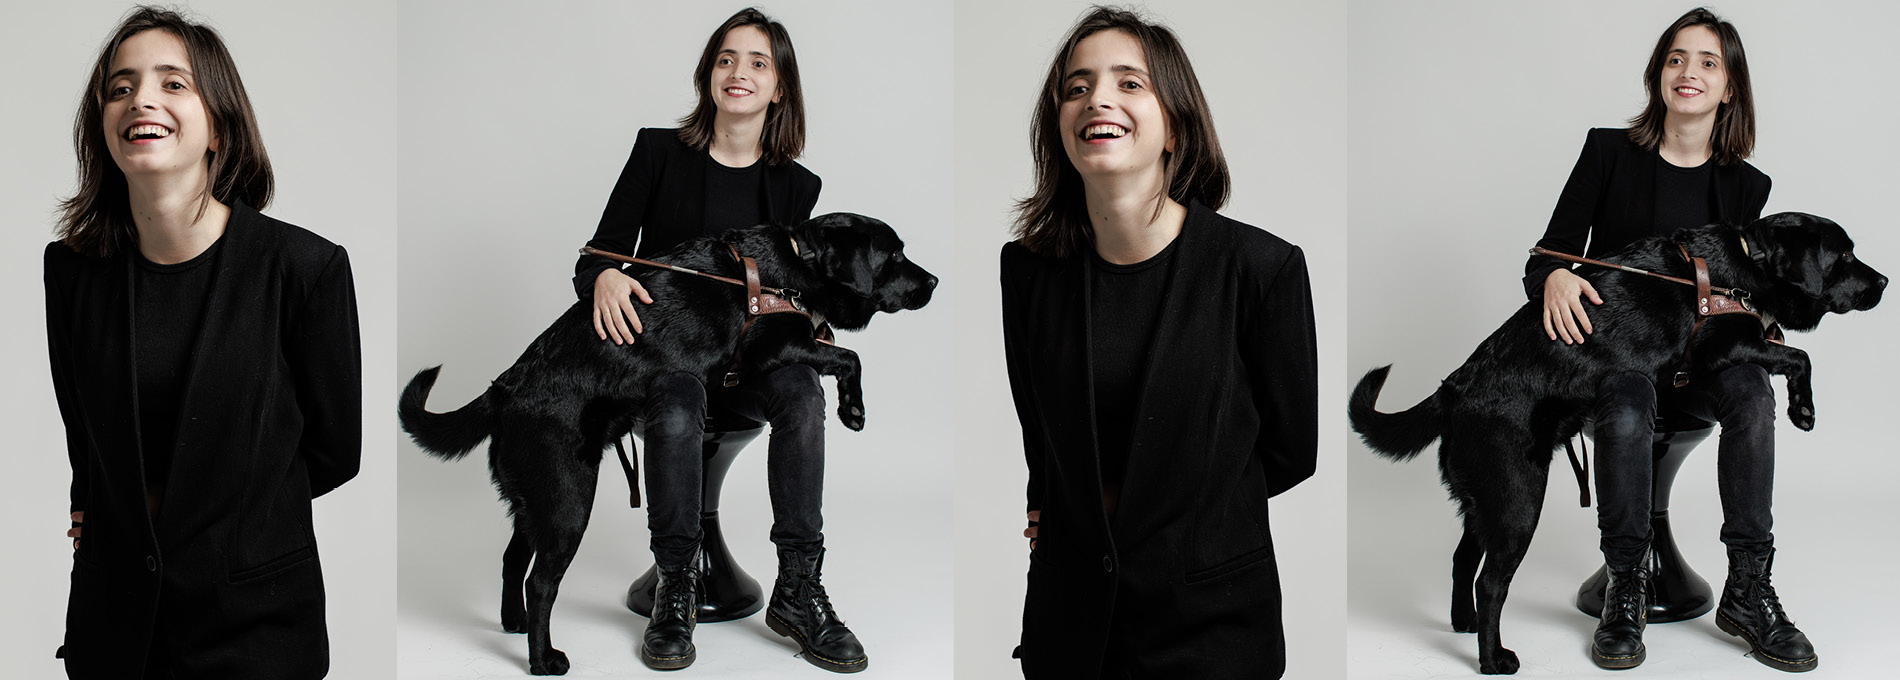 Maria Carvalhosa usando uma blusa preta e sorrindo para a foto. Na outra foto ela sorri e segura o seu cachorro preto no colo